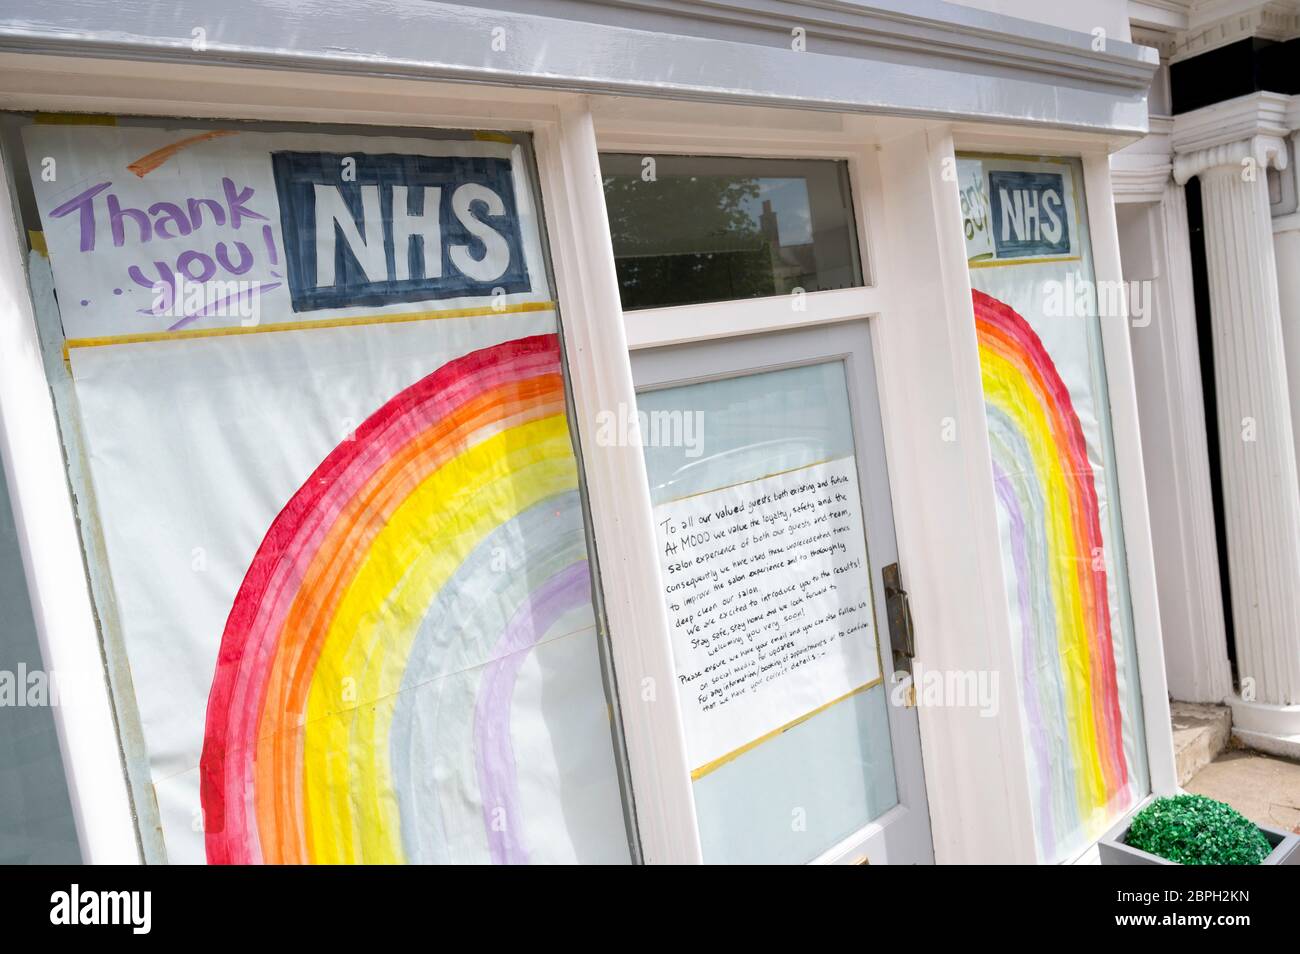 Unterstützung für das NHS Regenbogenschild in einem Schaufenster während der Covid-19 Pandemie, Market Harborough, Leicstershire, England. Stockfoto